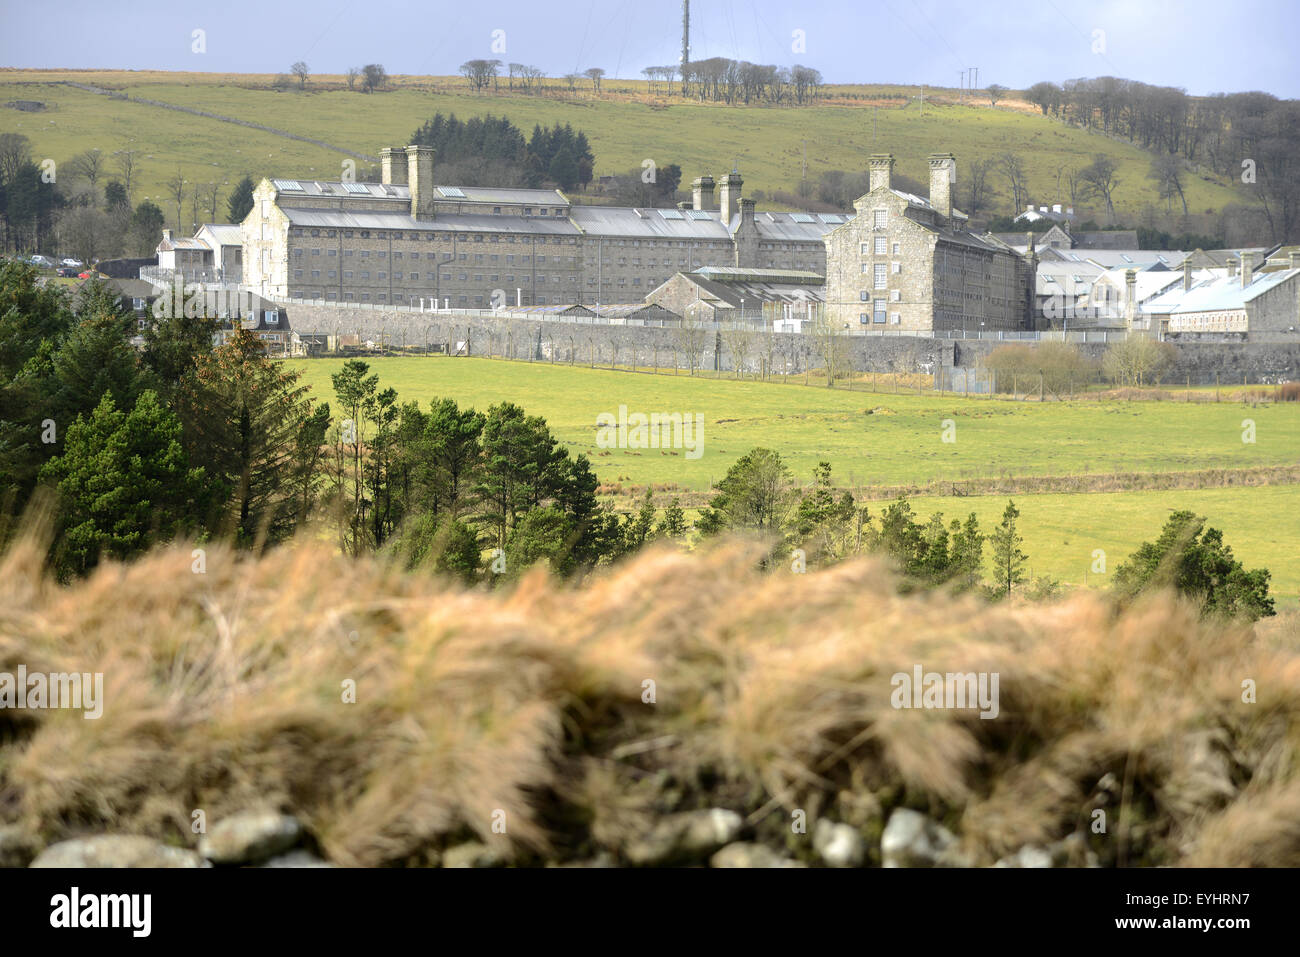 "Dartmoor Prison" HM Prison Dartmoor, Princetown, Dartmoor, Devon, England, UK Stock Photo